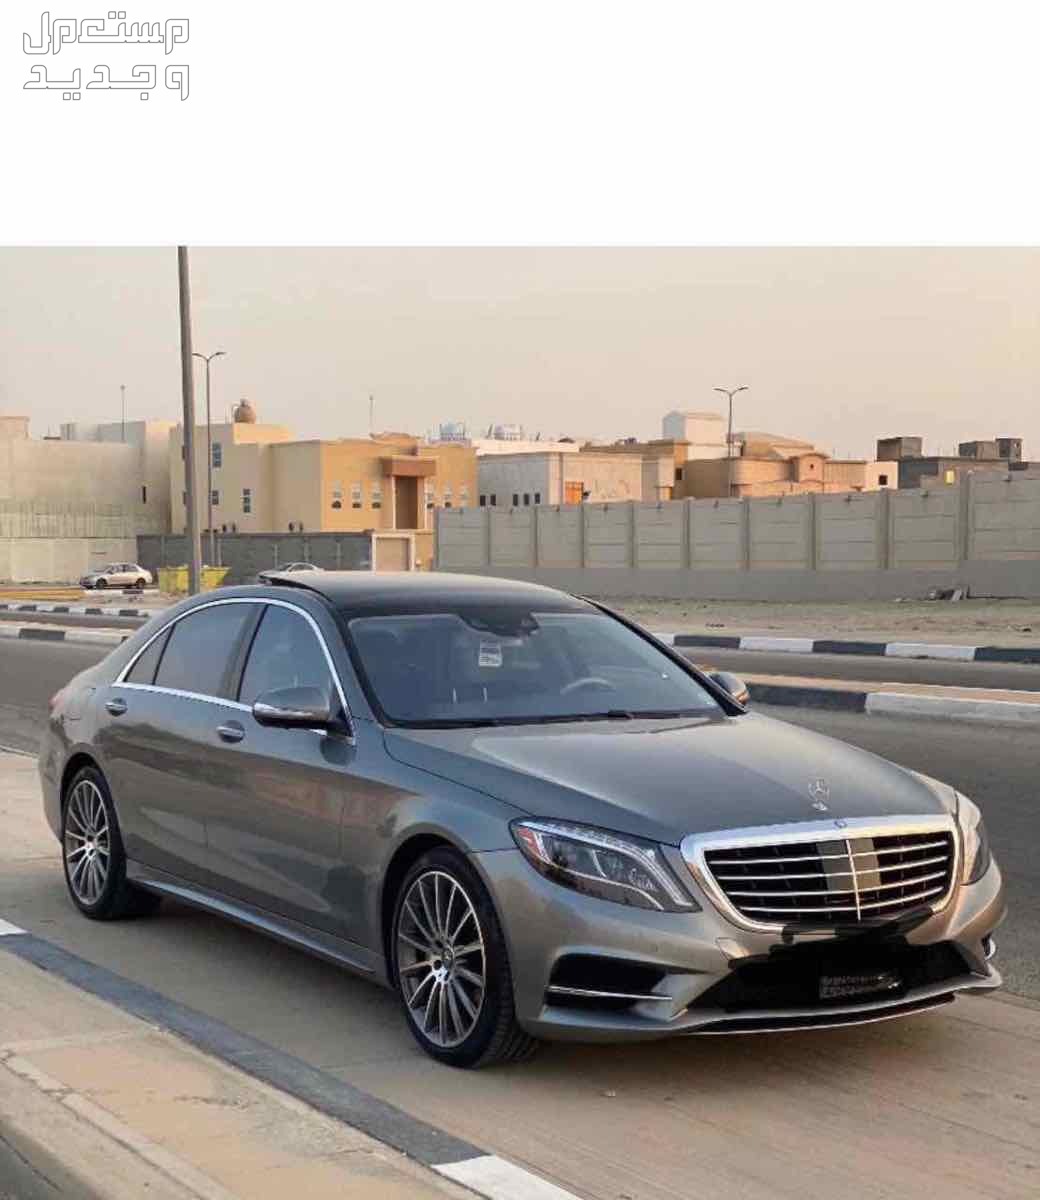 مرسيدس بنز S-Class 2015 في الرياض بسعر 150 ألف ريال سعودي